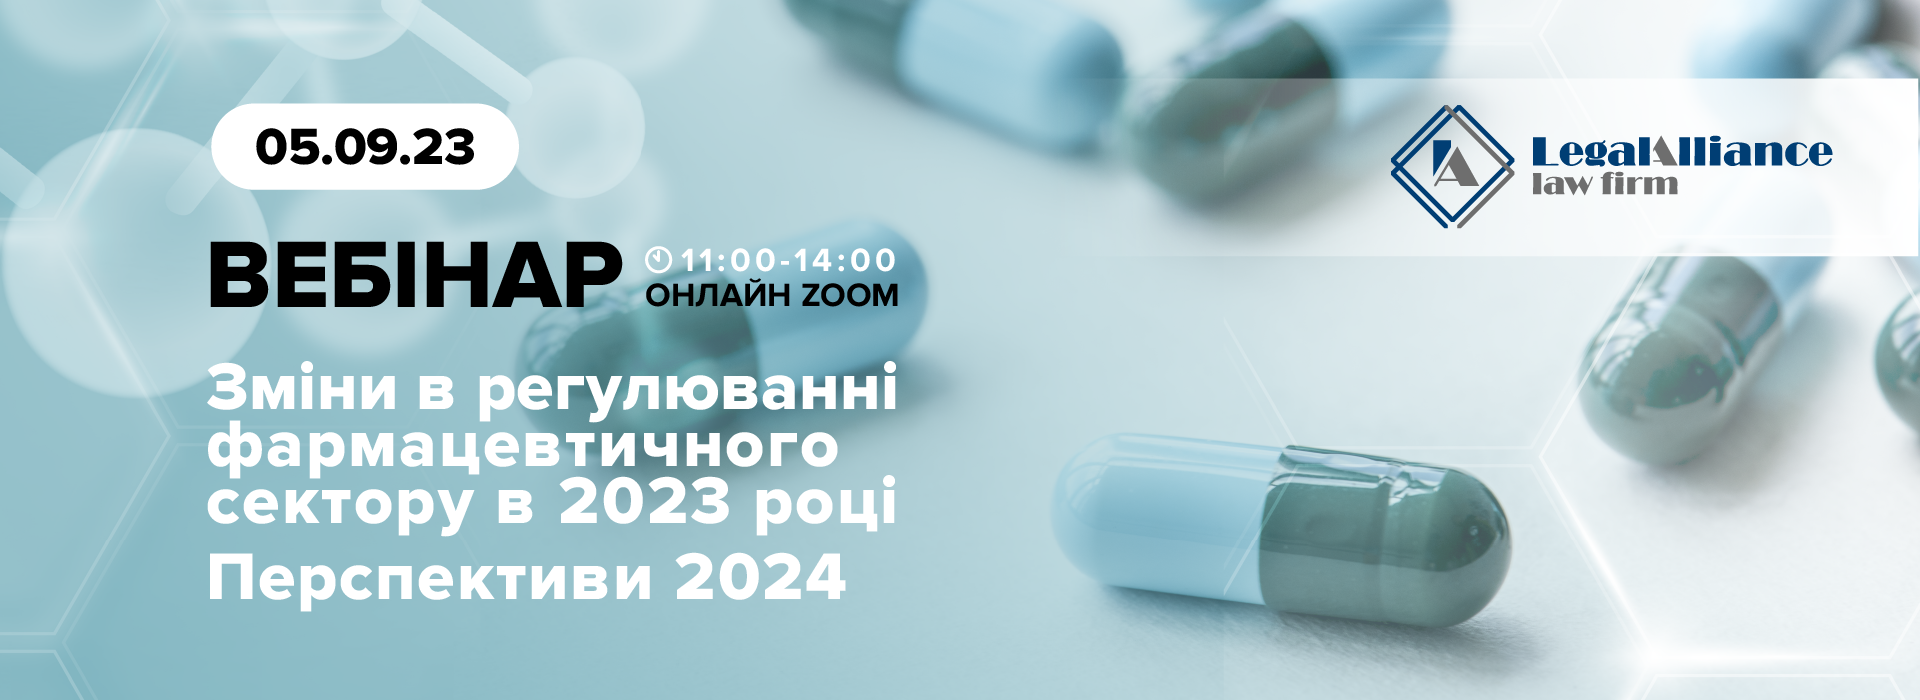 Вебінар «Зміни в регулюванні фармацевтичного сектору в 2023 році. Перспективи 2024»